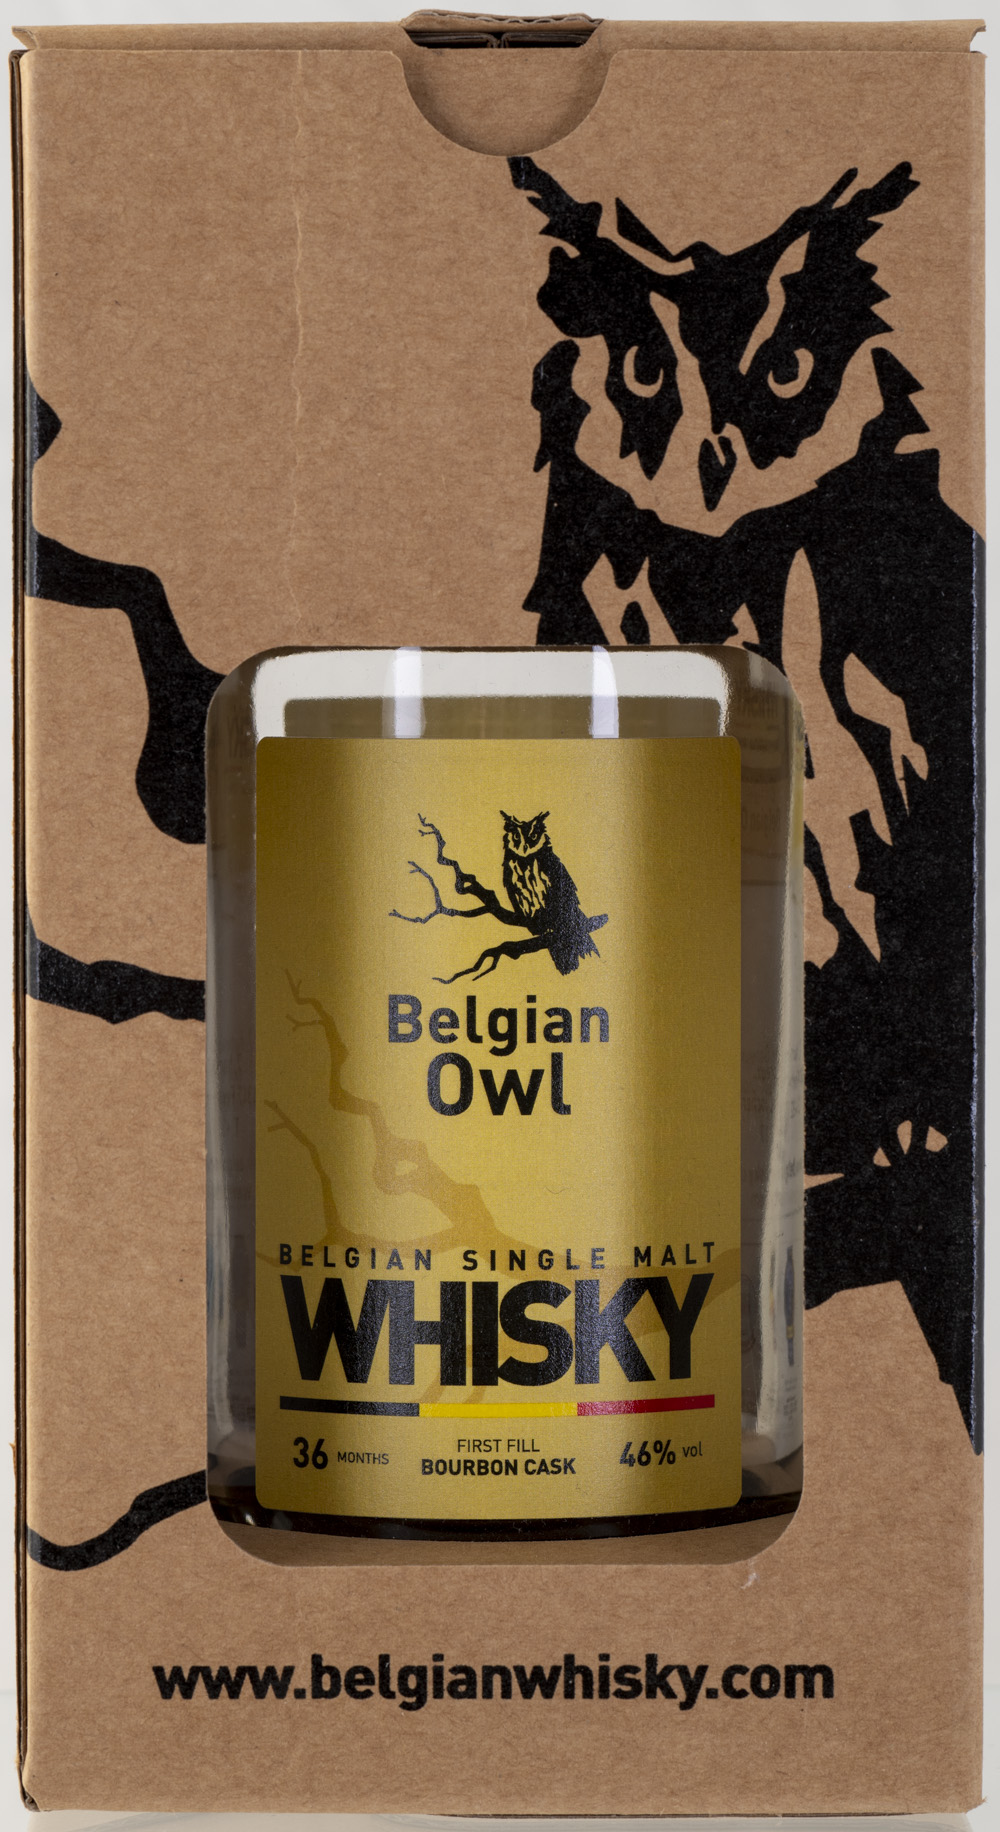 Billede: PHC_2233 - Belgian Owl - empty bottle in box.jpg